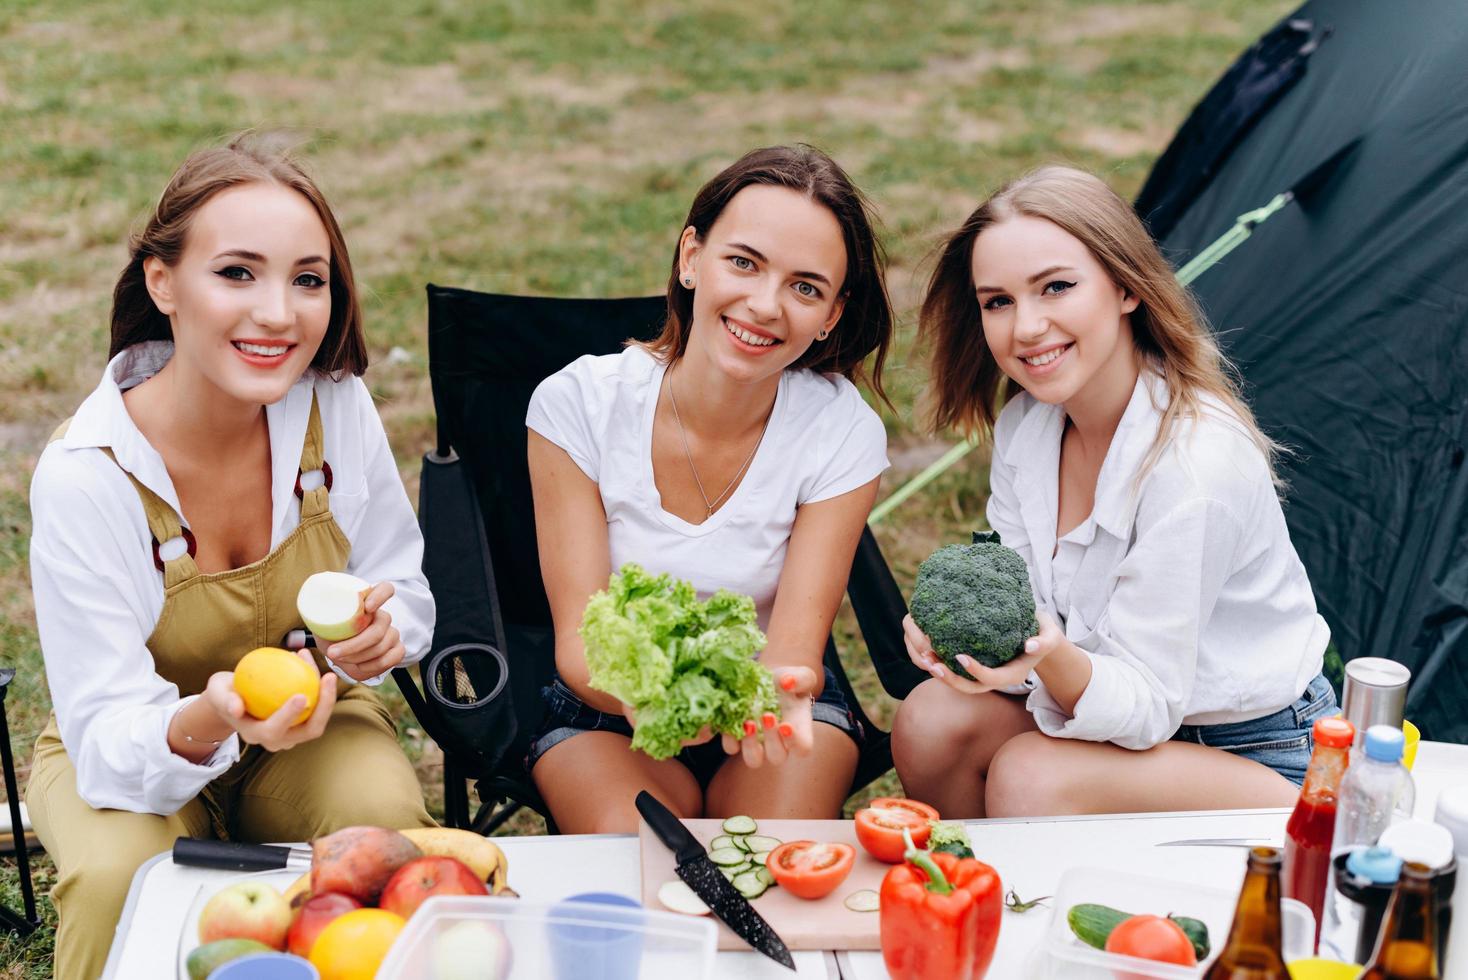 belle donne sedute al tavolo, con in mano una verdura e sorridenti allegramente foto